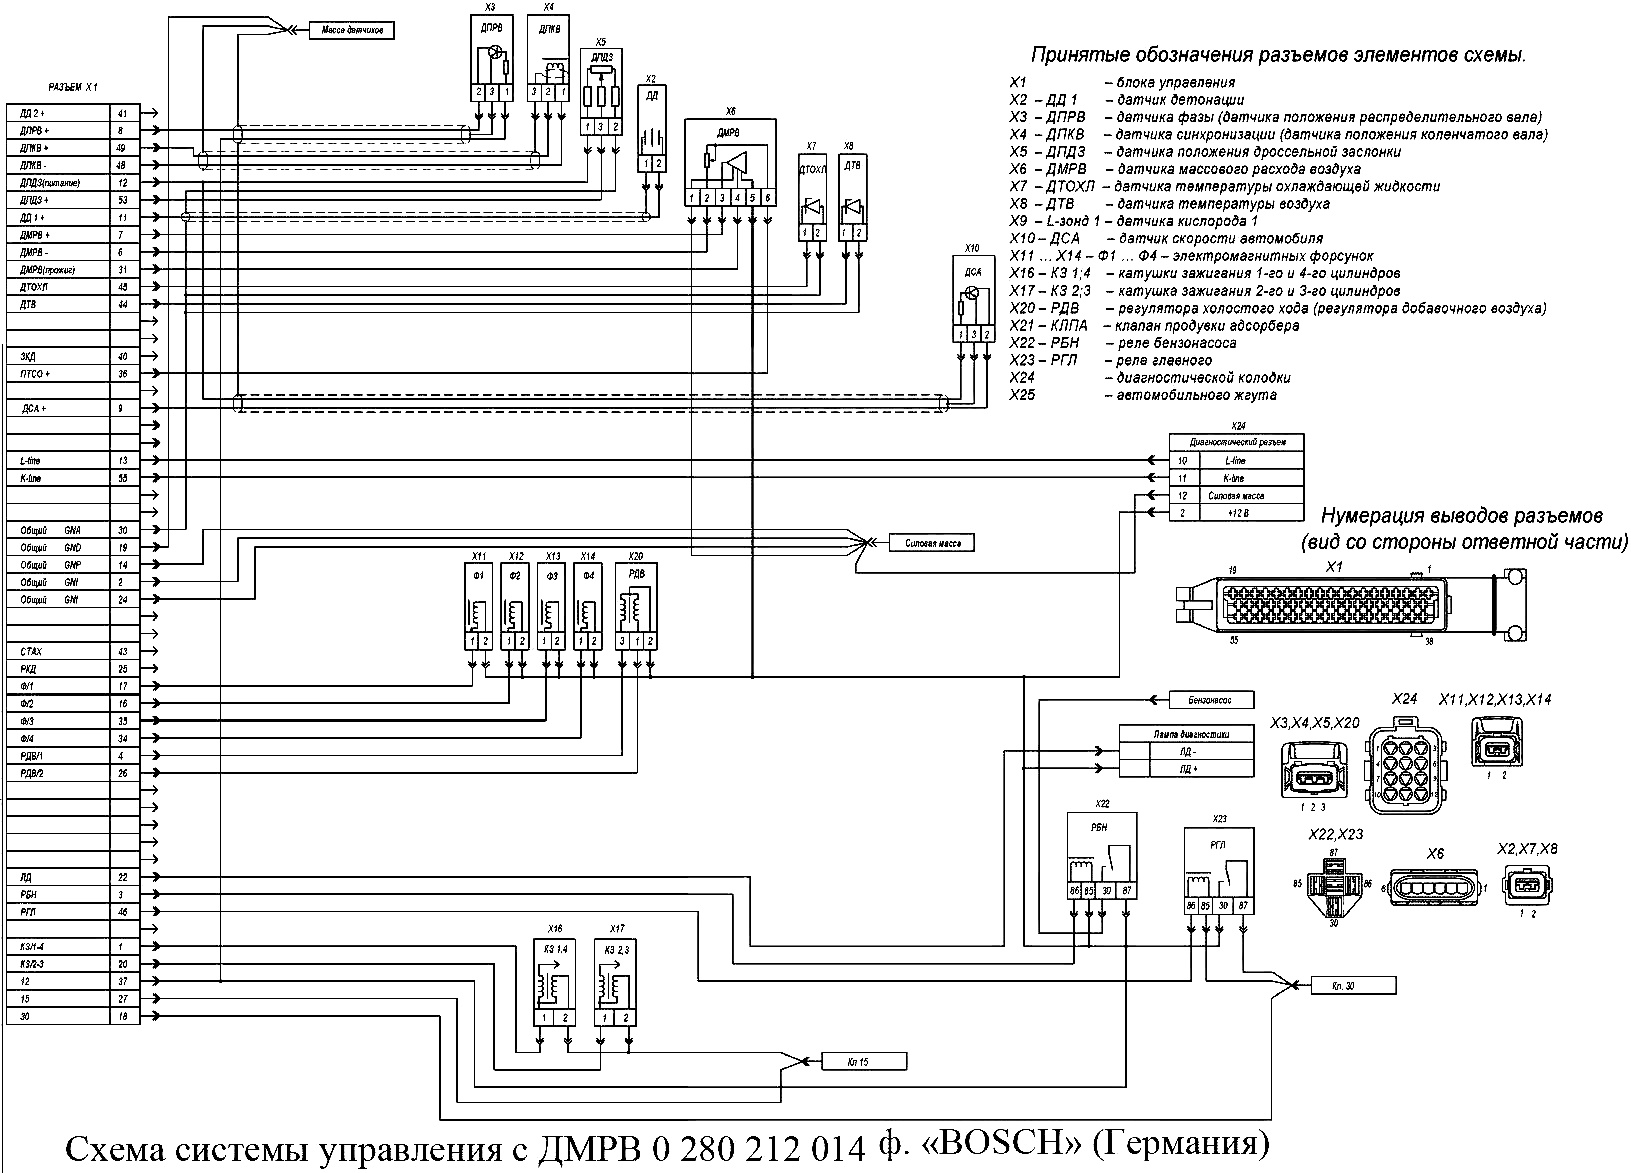 Scheme of SUD ZMZ-405 with DMRV 0 280 212 014 